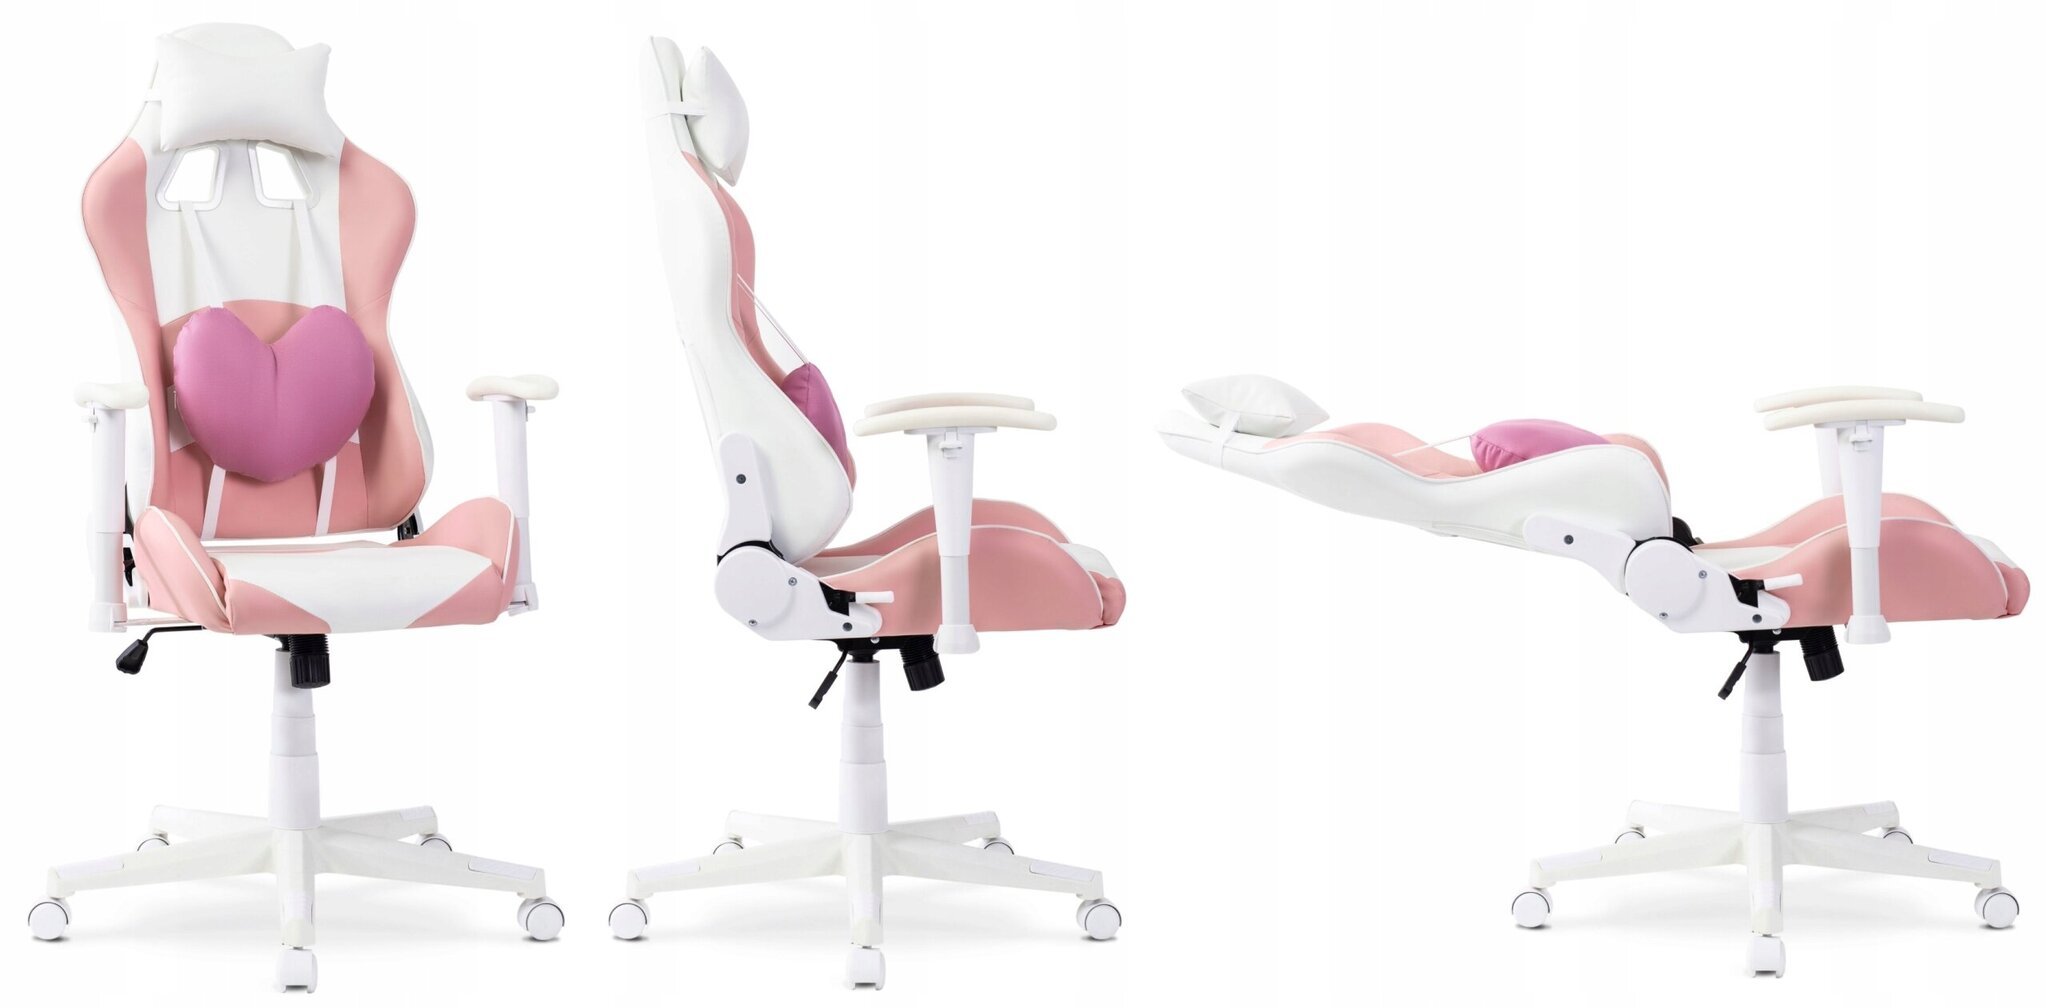 Biuro kėdė Mebel Elite Candy, rožinė kaina ir informacija | Biuro kėdės | pigu.lt